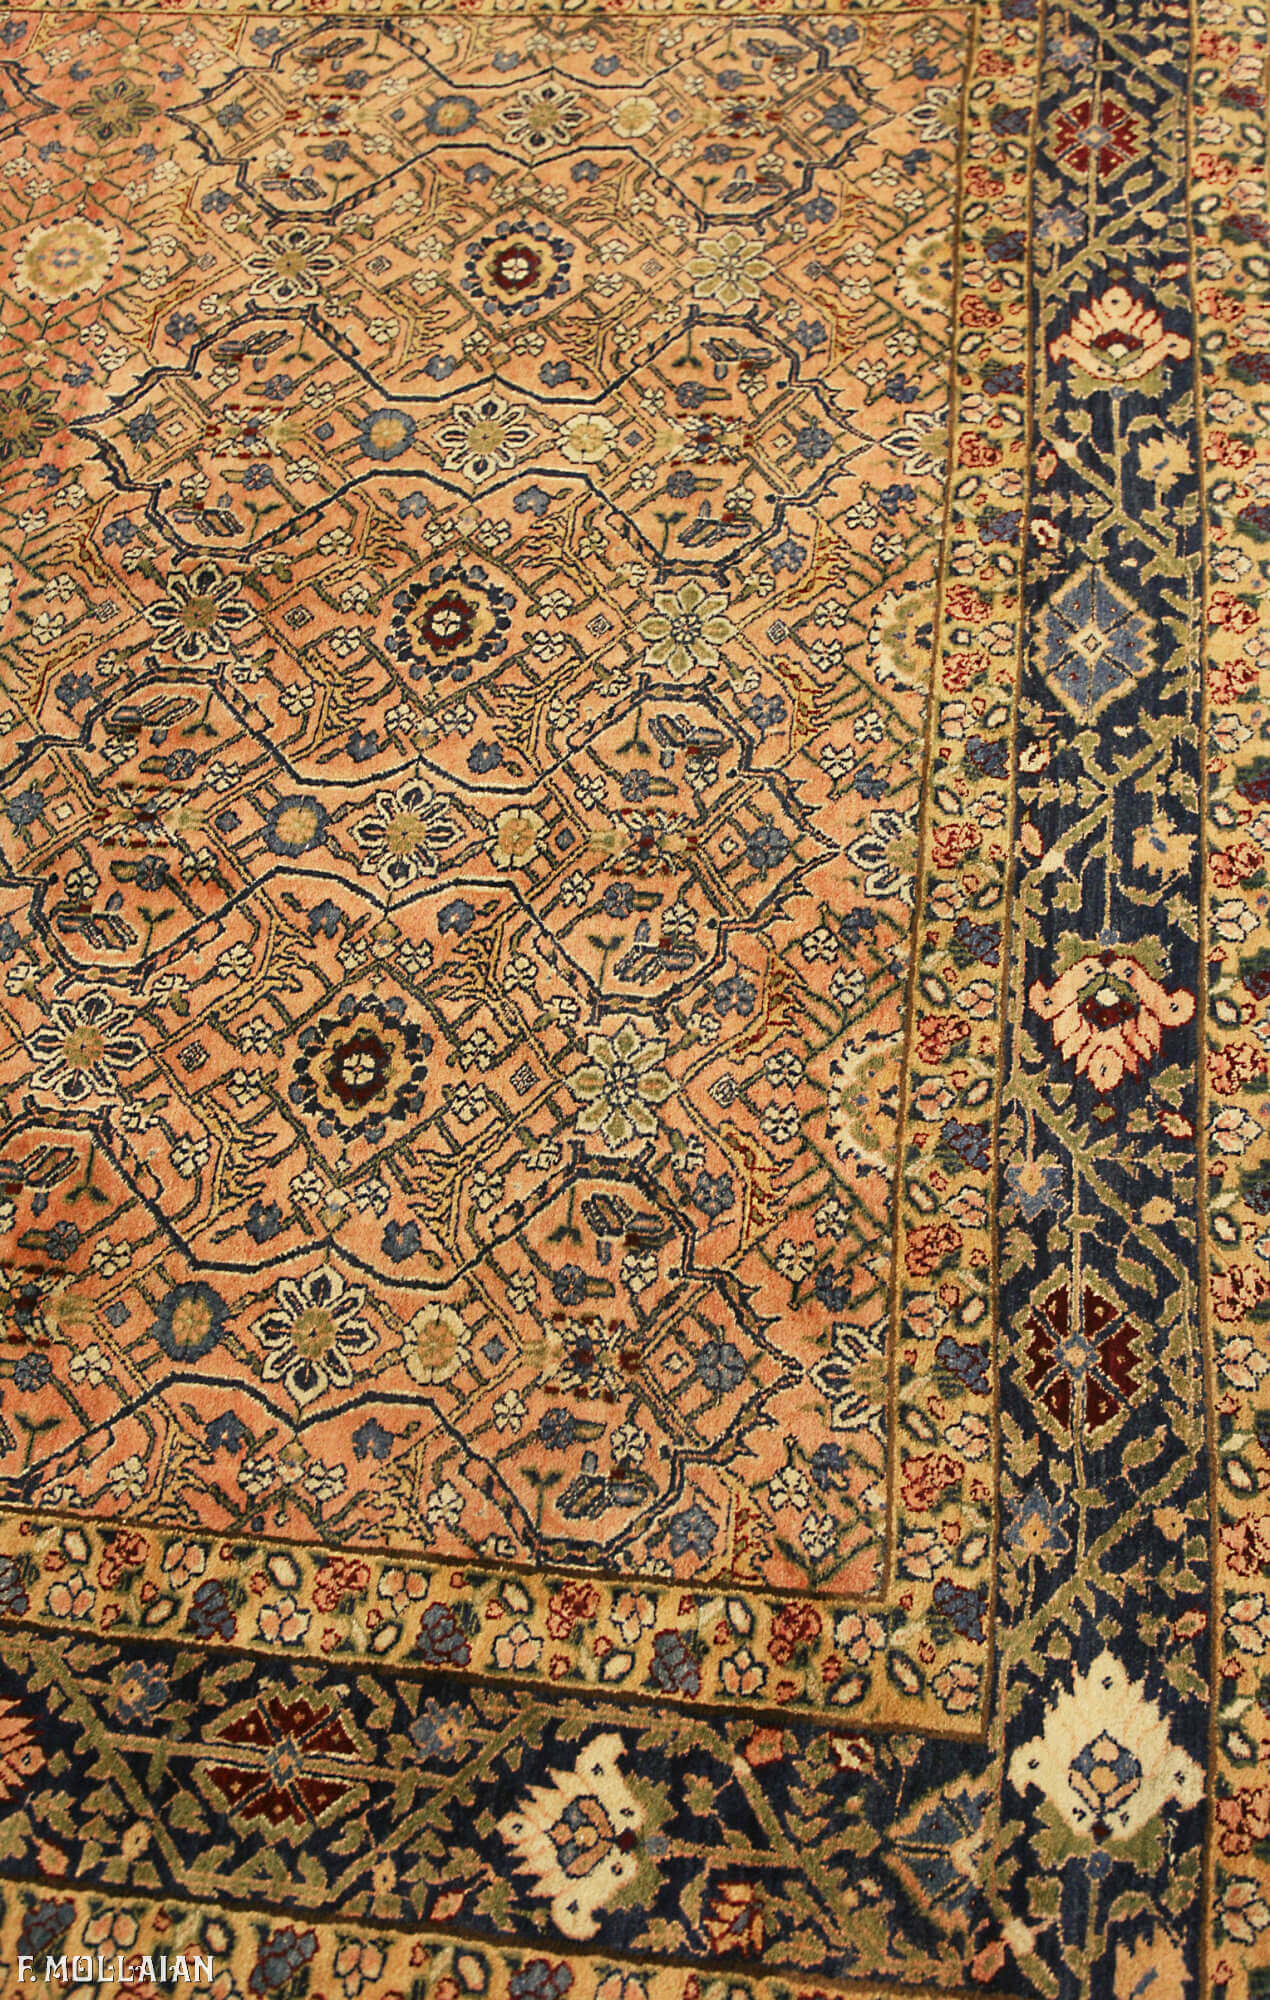 Teppich Indisch Alter Pashmina Wool Rug n°:32878245